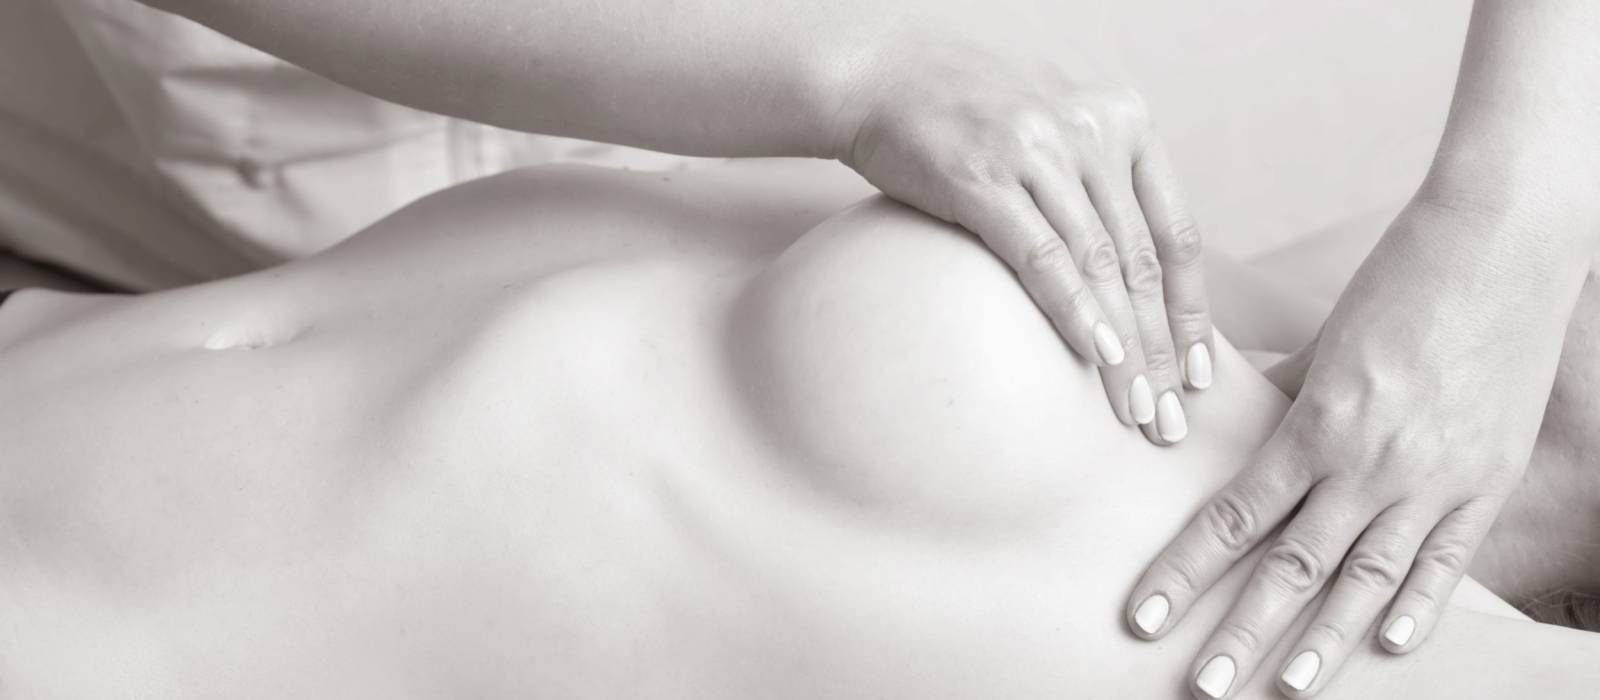 как делать массаж груди во время беременности фото 25